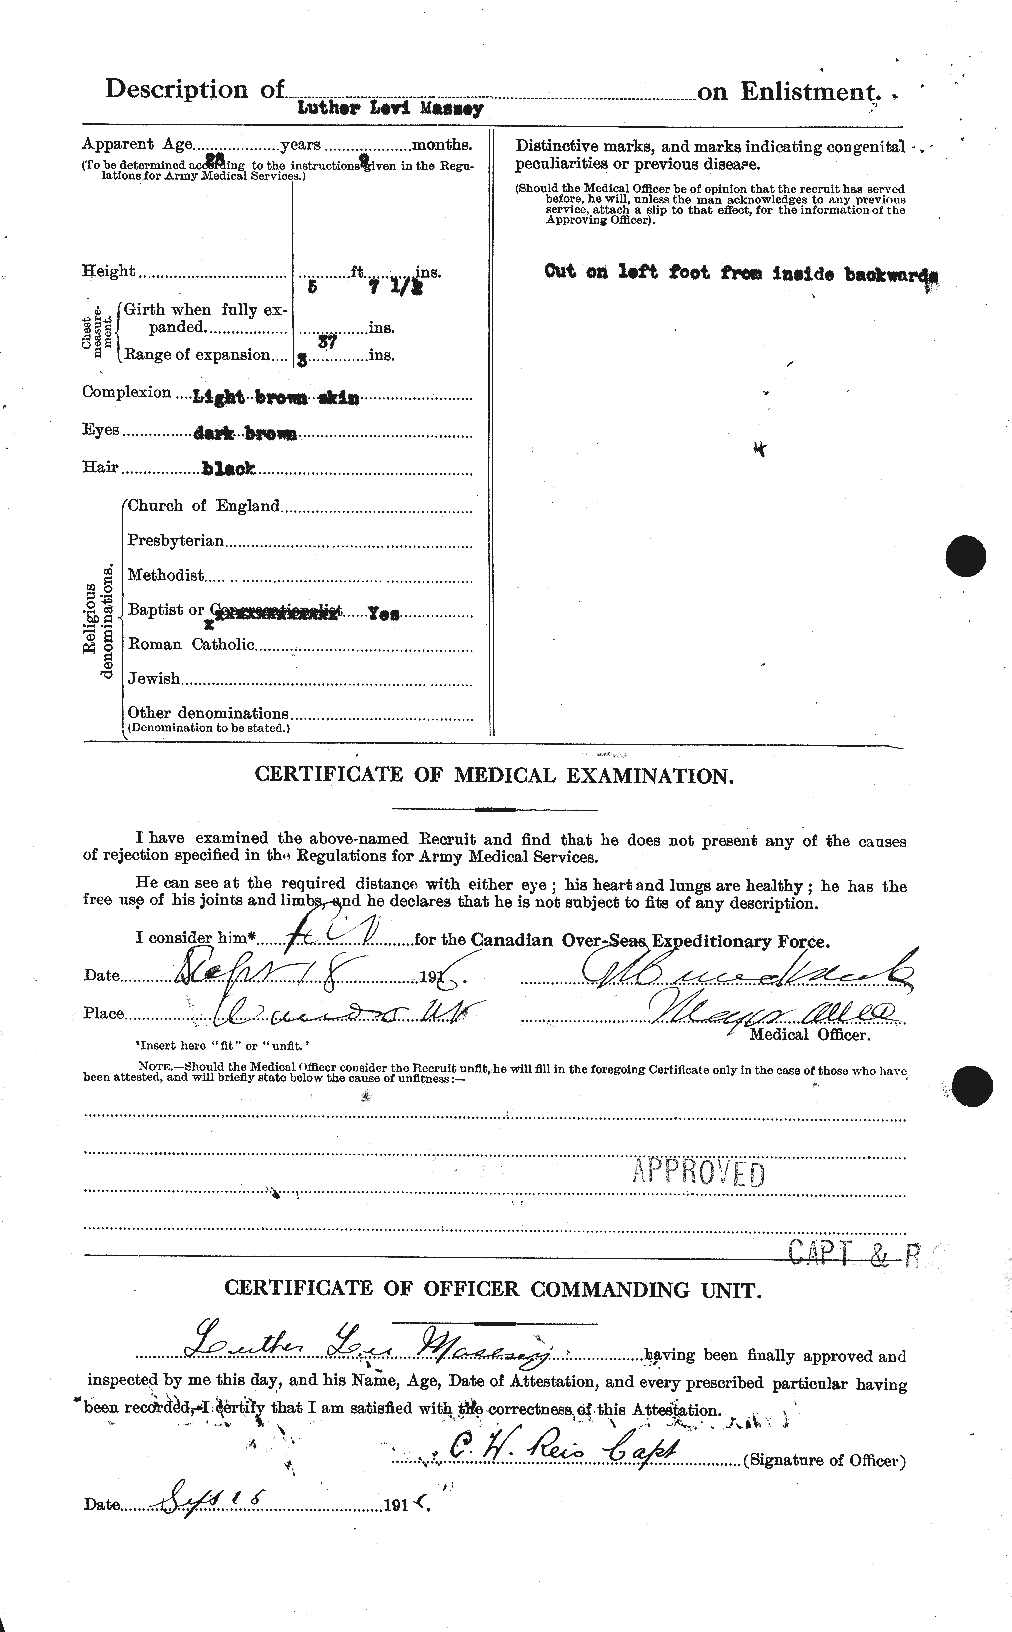 Dossiers du Personnel de la Première Guerre mondiale - CEC 487087b